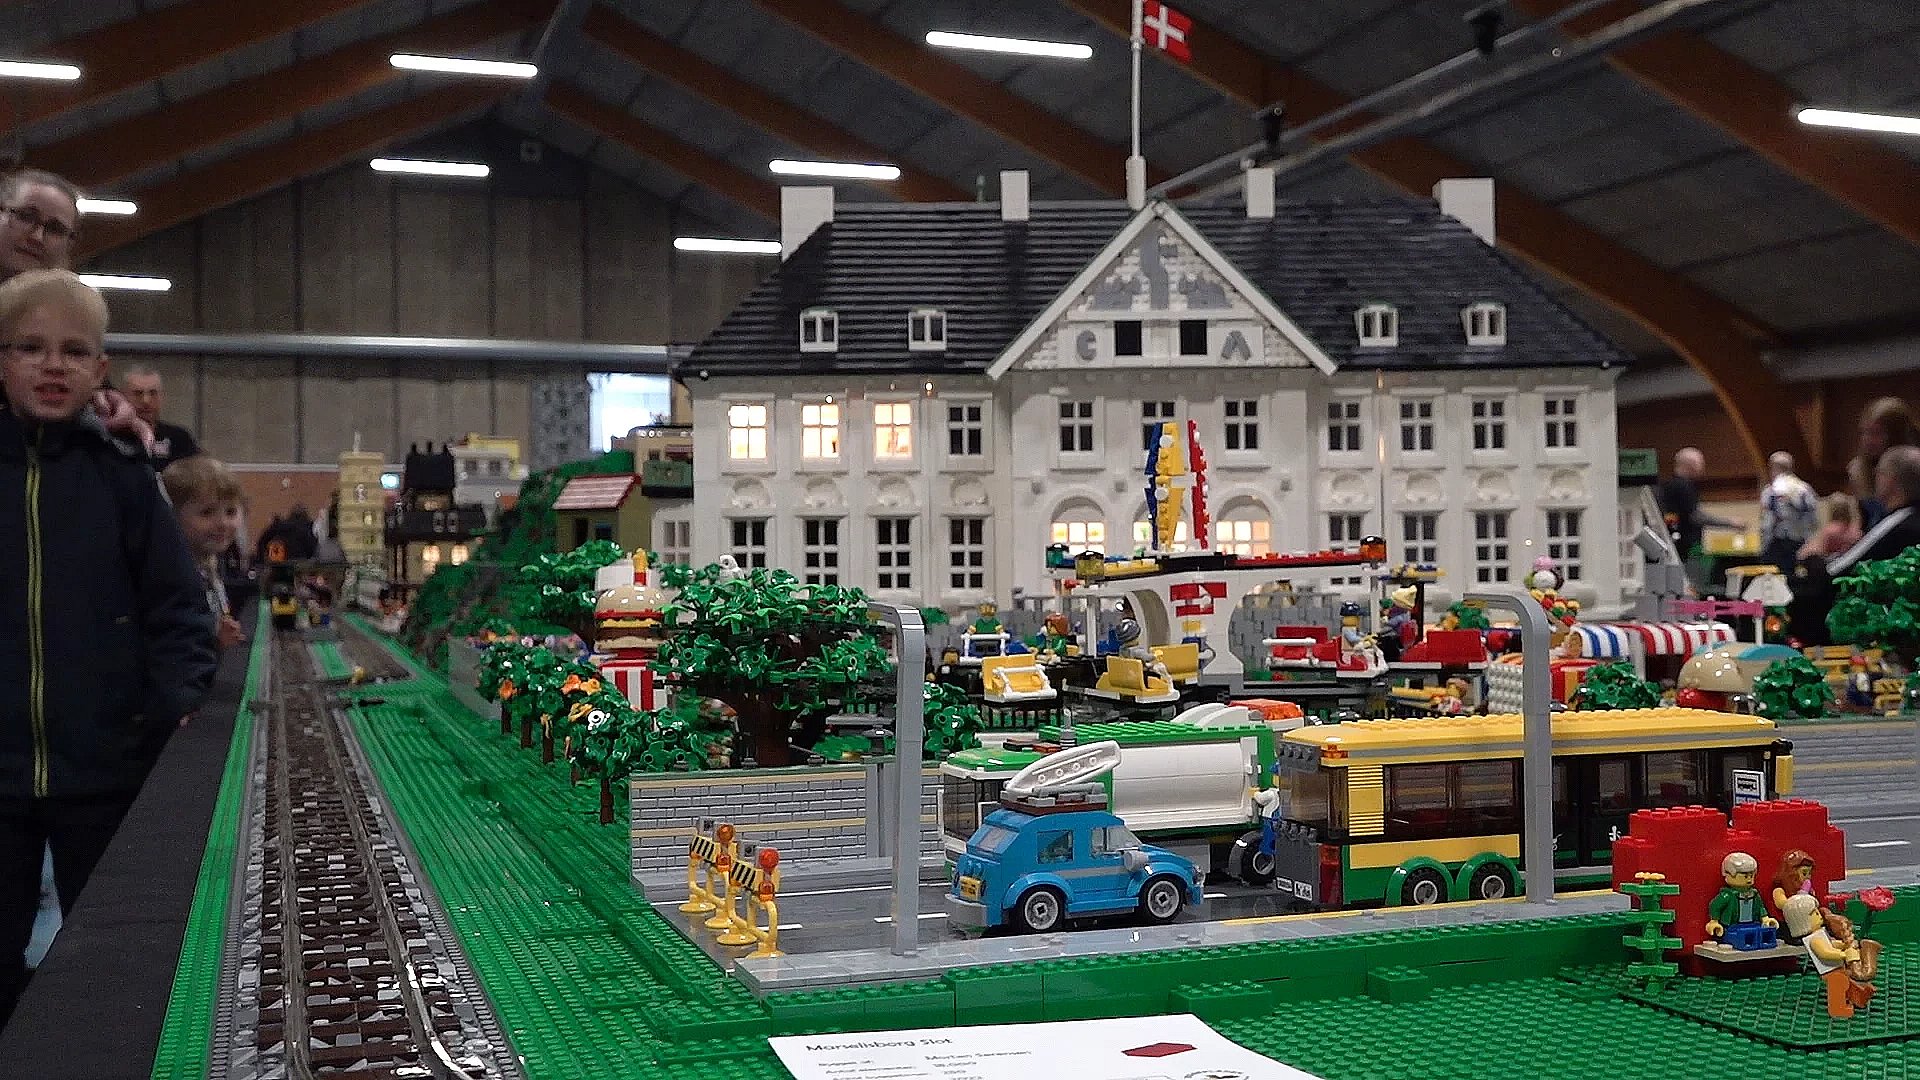 Gigantiske Lego-bygninger bliver vist MIDTVEST